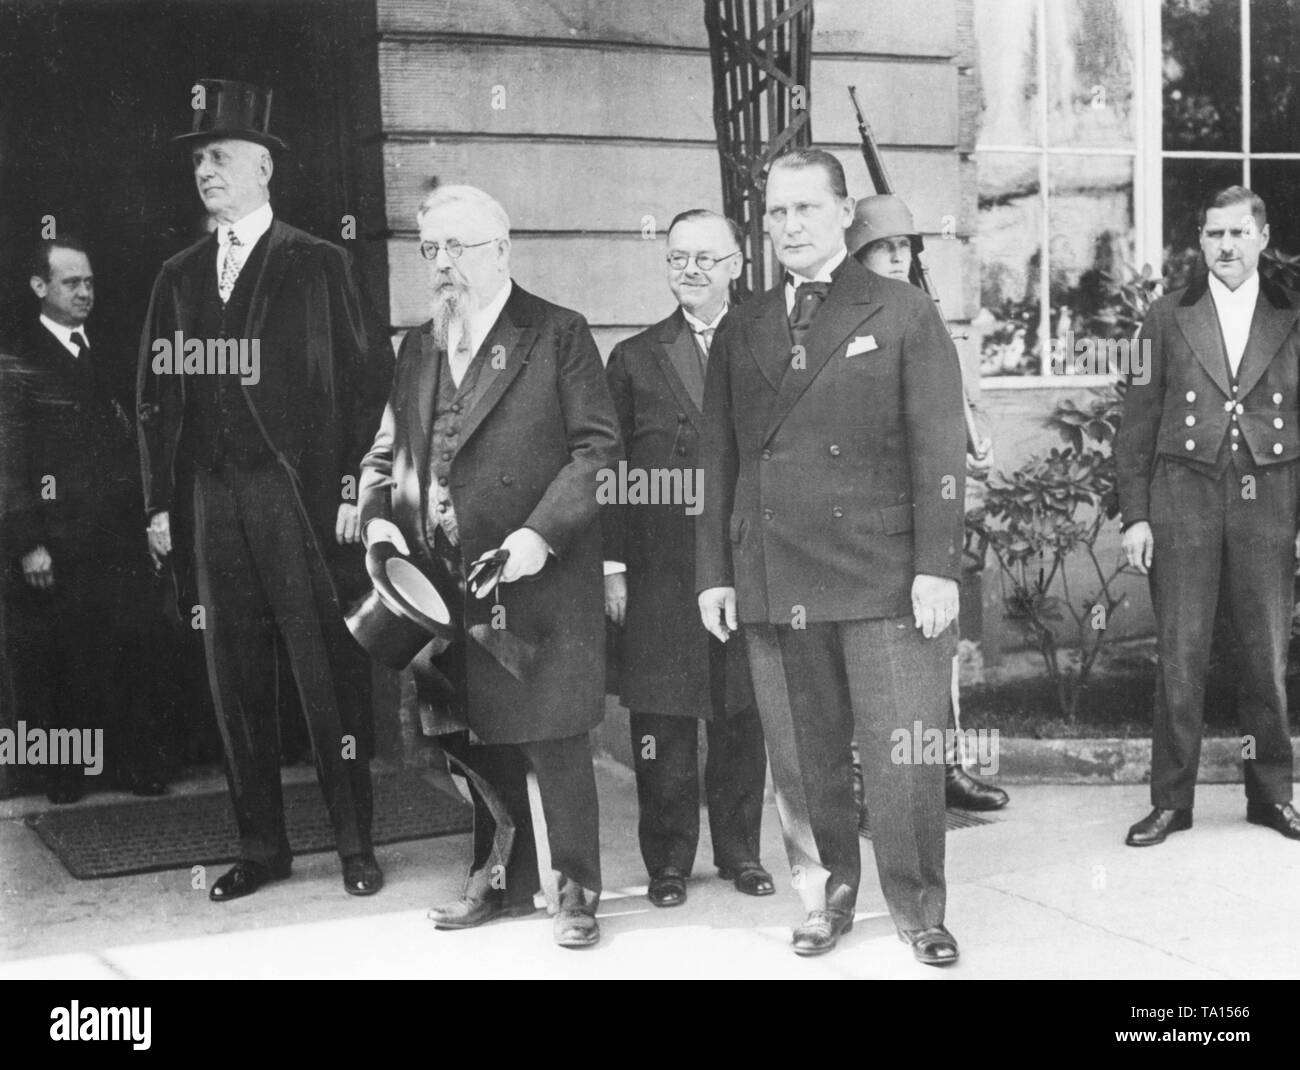 Le nouveau Reichstag présidium, lorsqu'il quitte le palais présidentiel où les quatre membres se sont présentés au Président du Reich. De gauche à droite : Walther Graef (DNVP), Thomas Esser (Zentrumspartei), Hans Rauch (BVP) et le nouveau président du Reichstag Hermann Goering (NSDAP). Banque D'Images